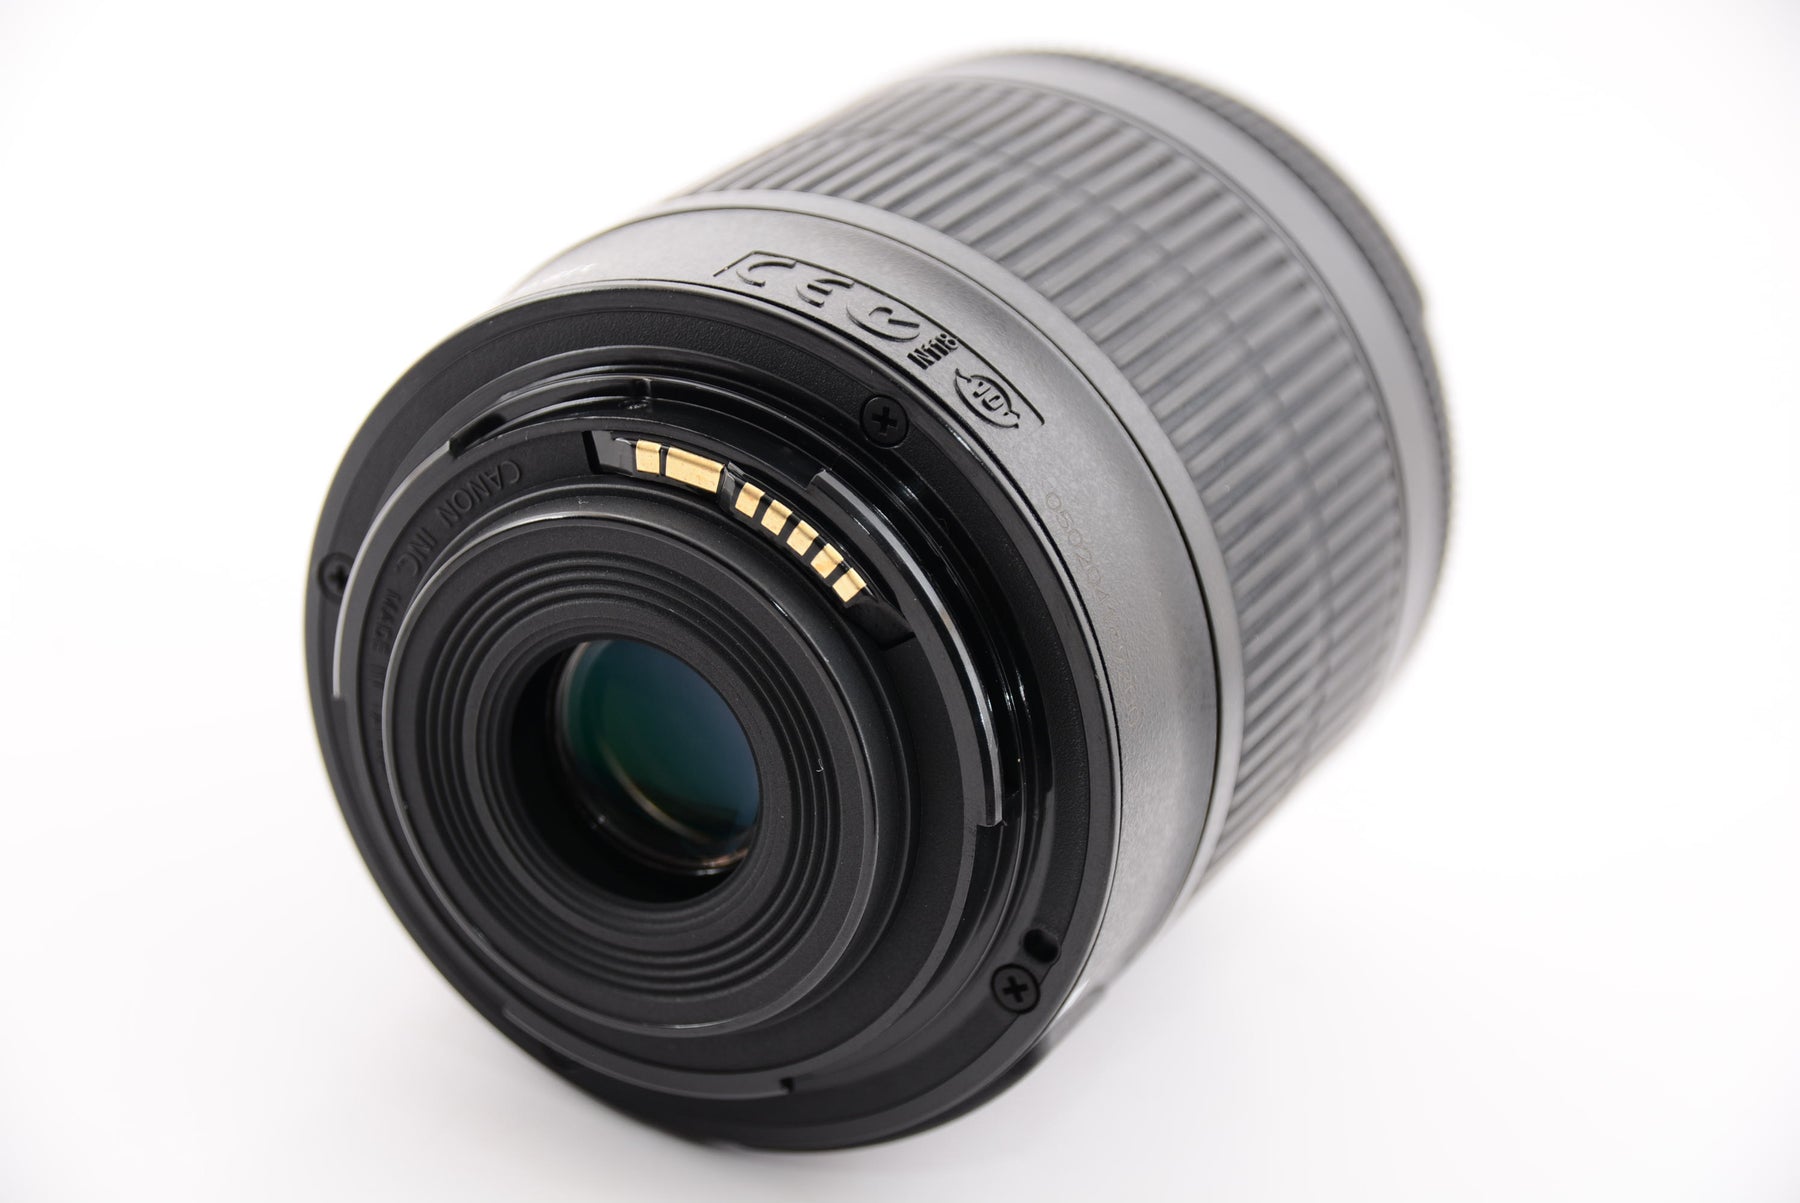 Canon デジタル一眼レフカメラ EOS Kiss X7 レンズキット EF-S18-55mm F3.5-5.6 IS STM付属 KISSX7-1 - 2